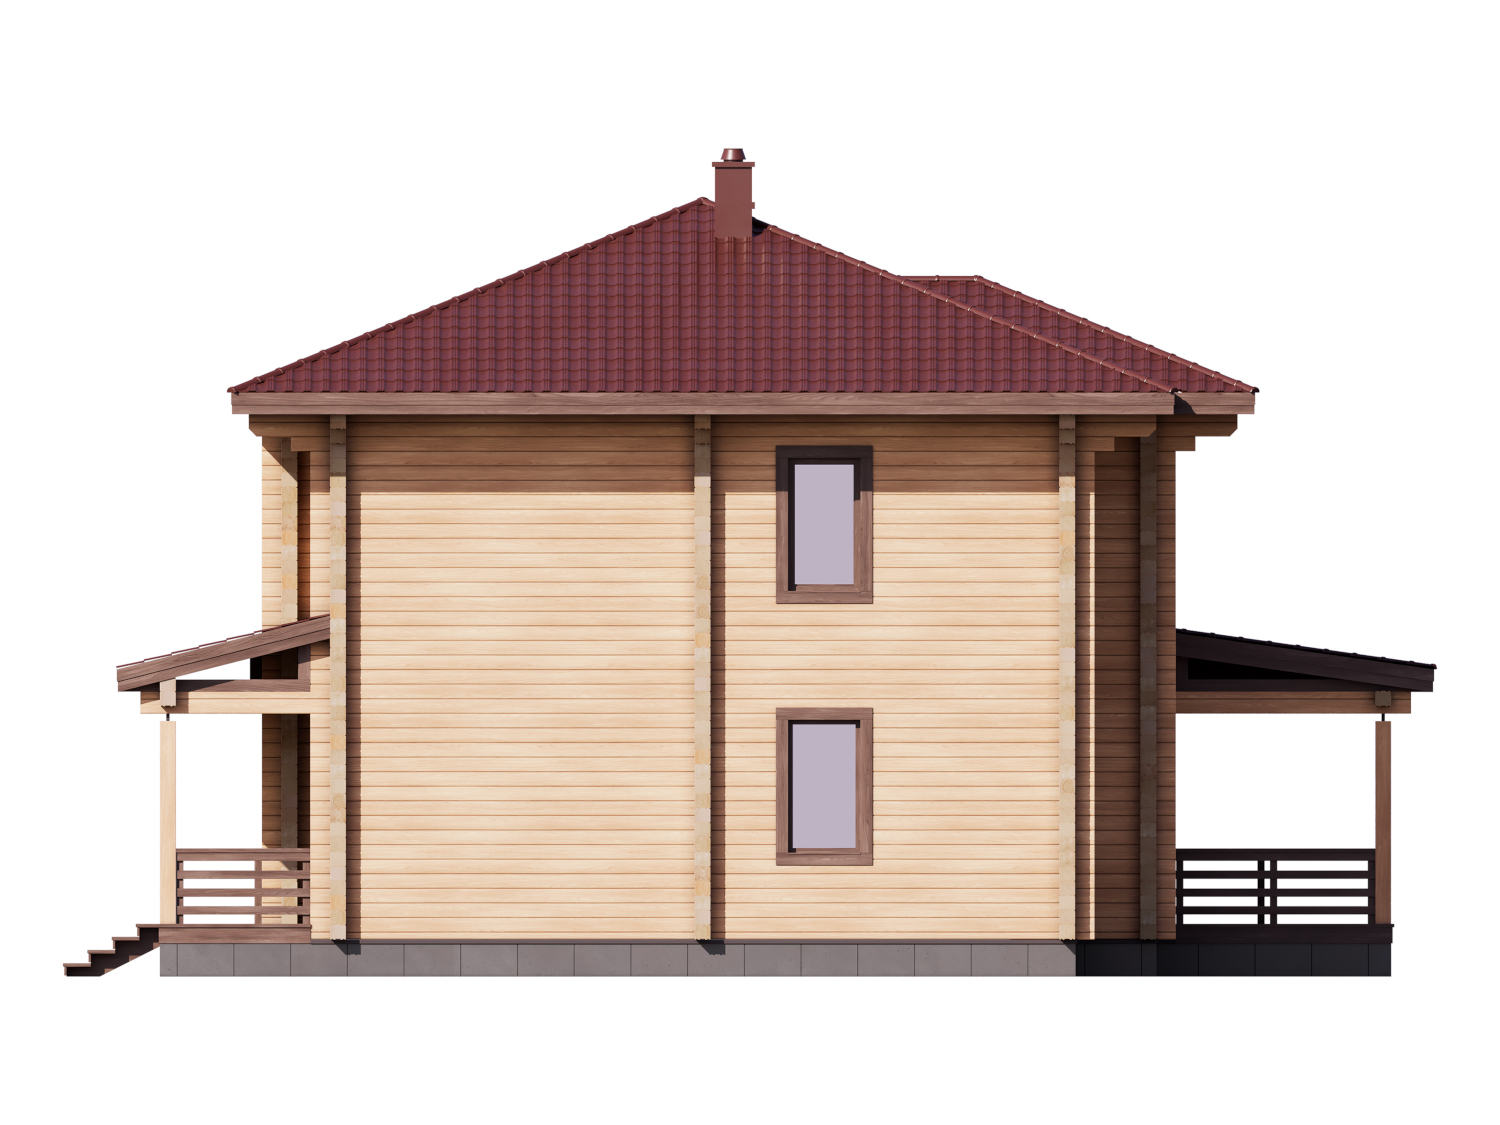 1-66 Проект двухэтажного деревянного дома из бруса